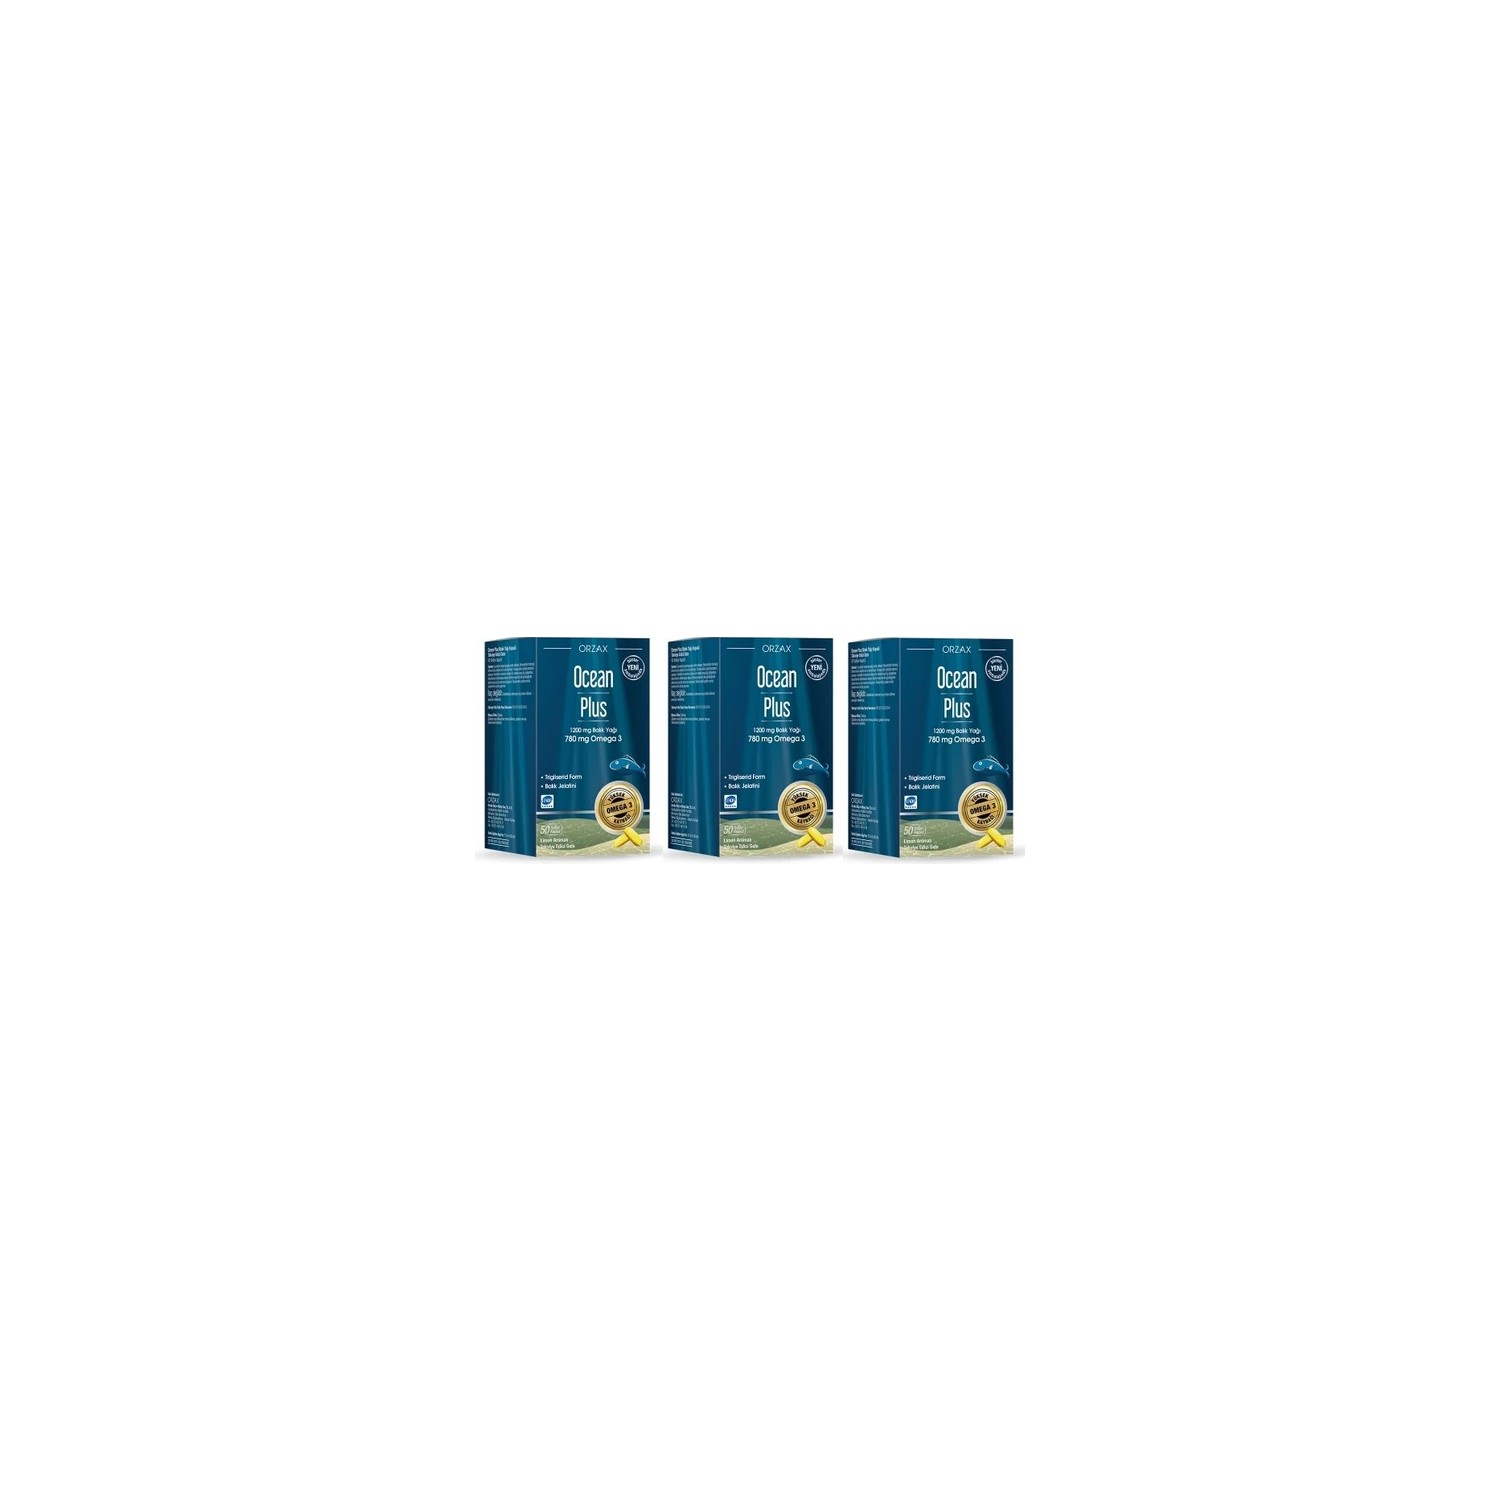 Омега-3 Plus Orzax Ocean 1200 мг, 3 упаковки по 50 мягких капсул цена и фото